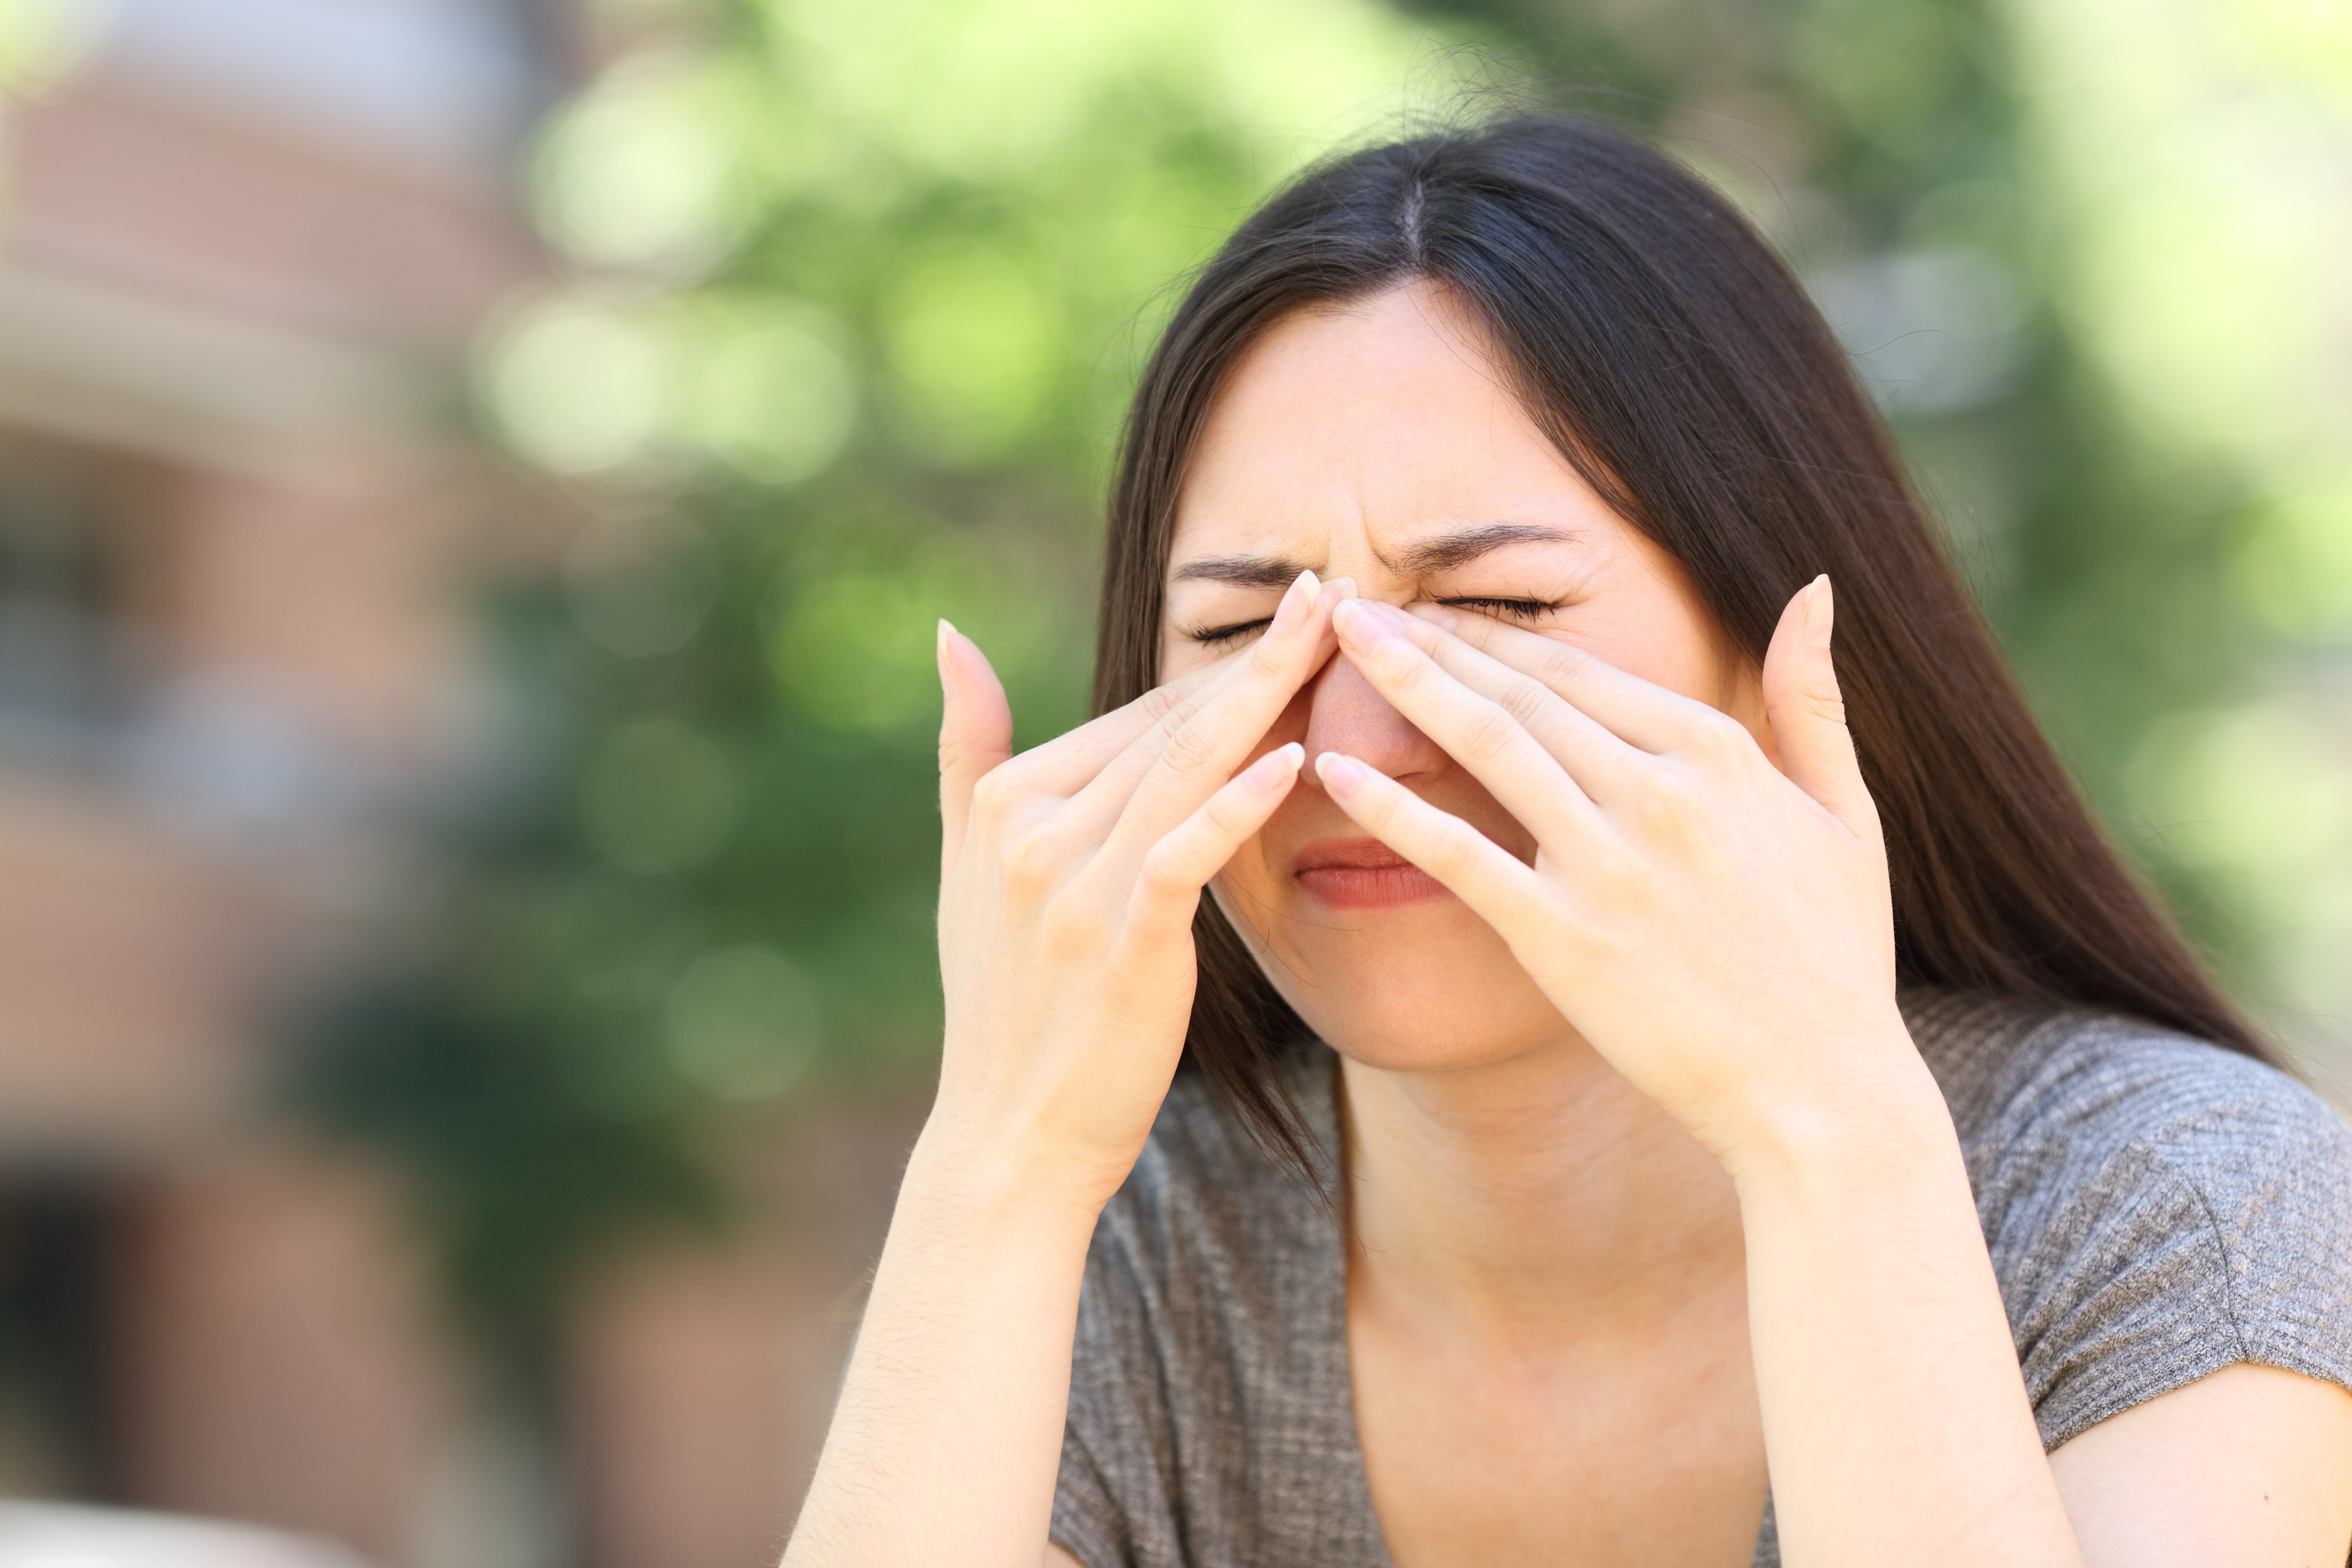 Is It Dry Eye or Eye Allergies?